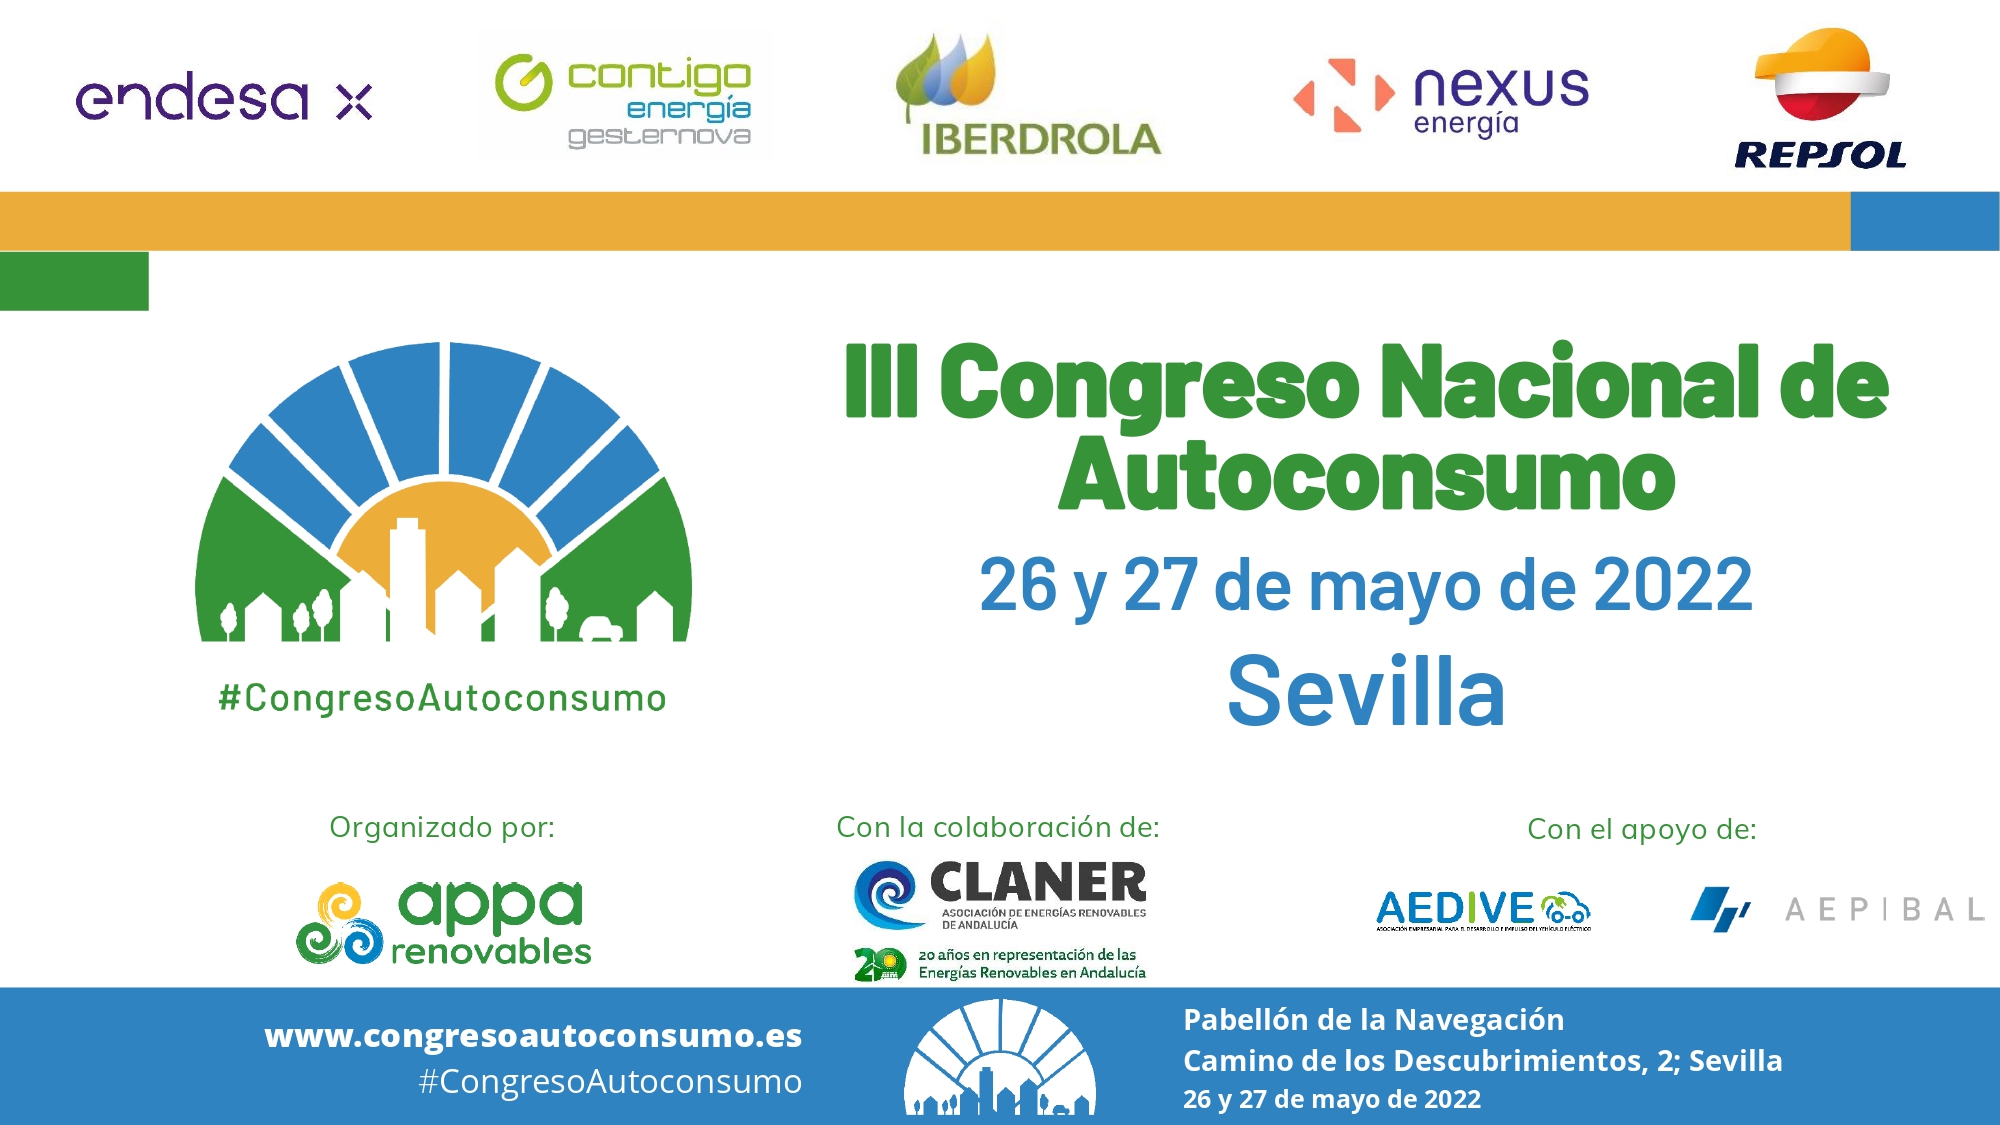 Sevilla acoge esta semana el III Congreso Nacional de Autoconsumo, organizado por APPA Renovables y CLANER